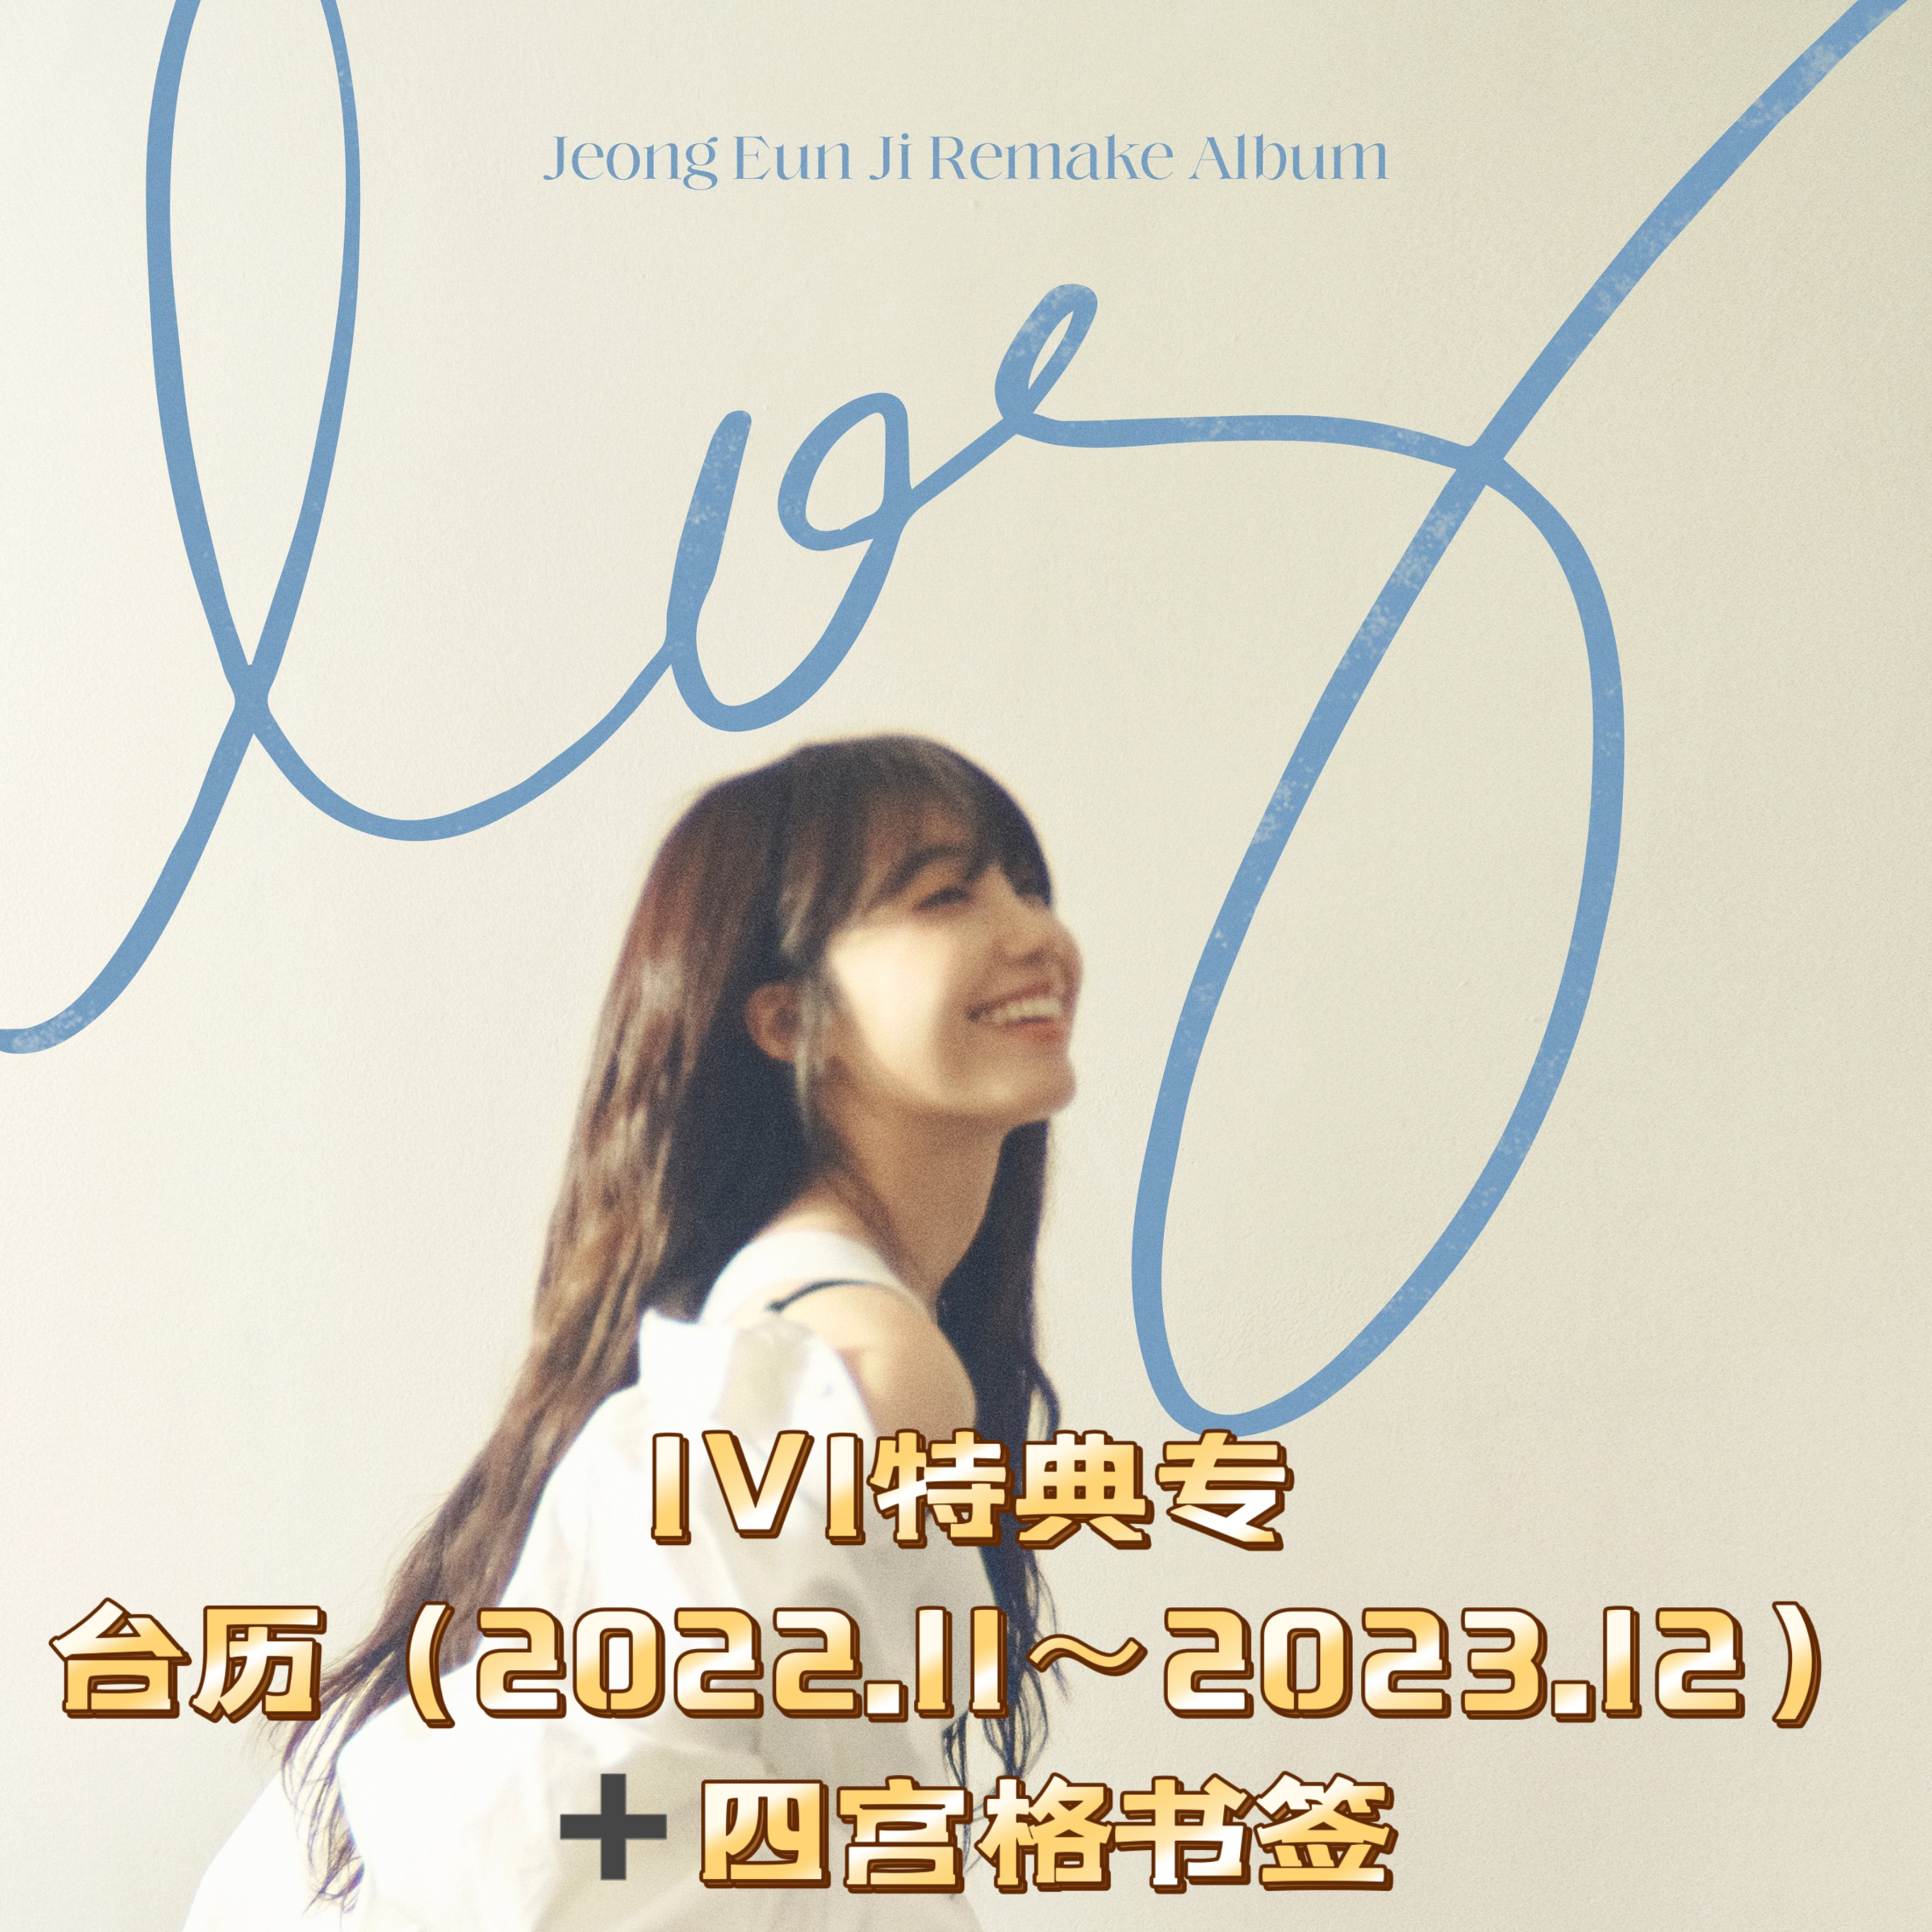 [全款 特典台历1V1 特典专 第二批(截止到11月17日早7点)] Jeong Eun Ji - Remake Album [log]_郑恩地中文首站